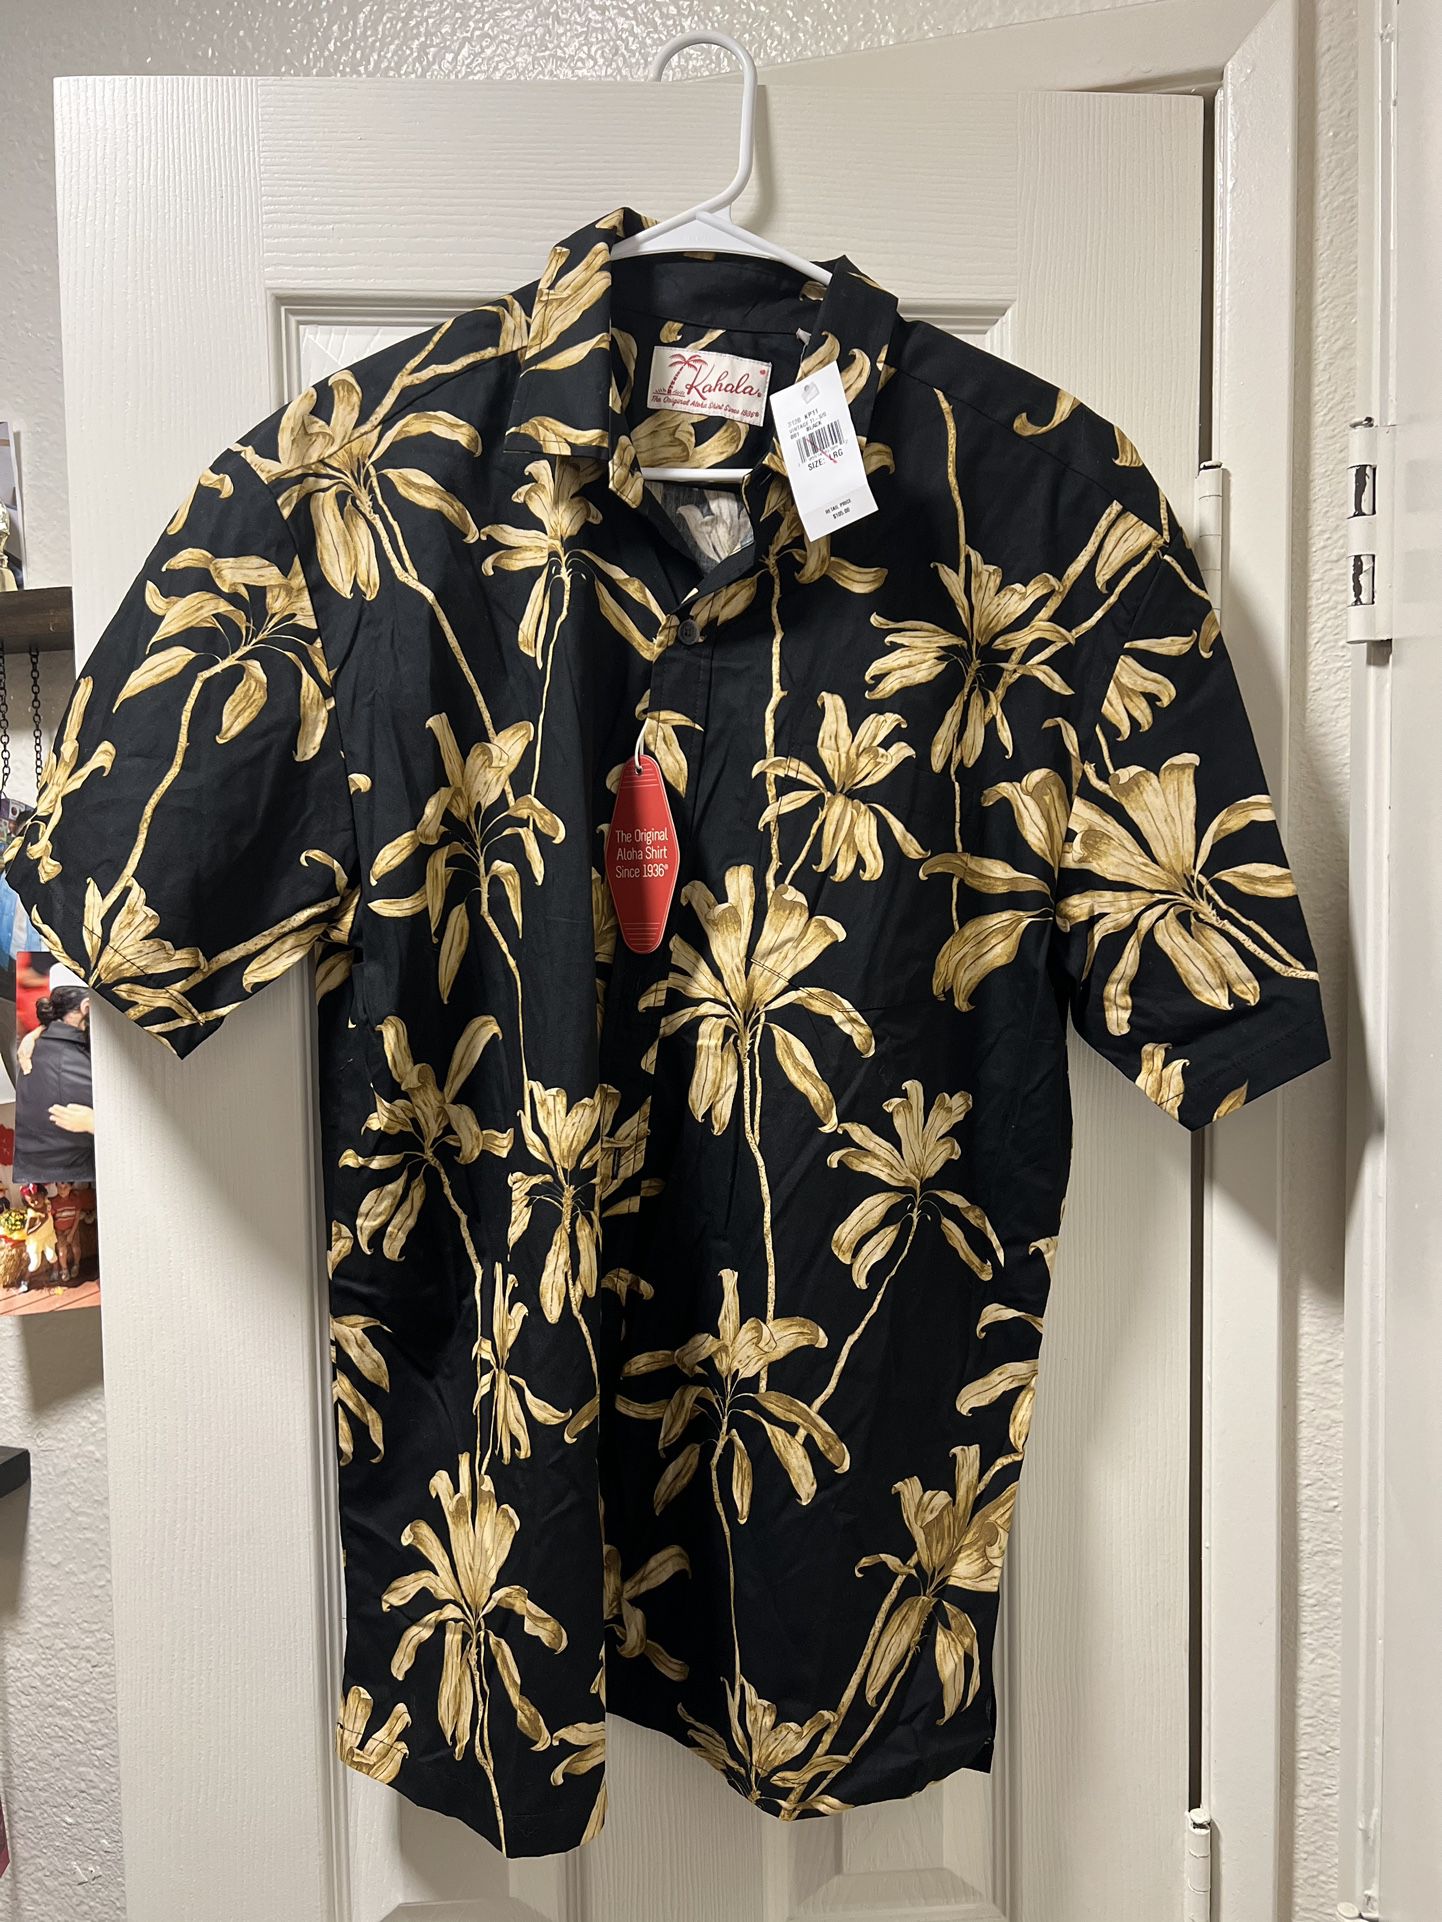 BRAND NEW Black Kahala Button Down Vintage Ti Leaf Aloha Shirt sz L